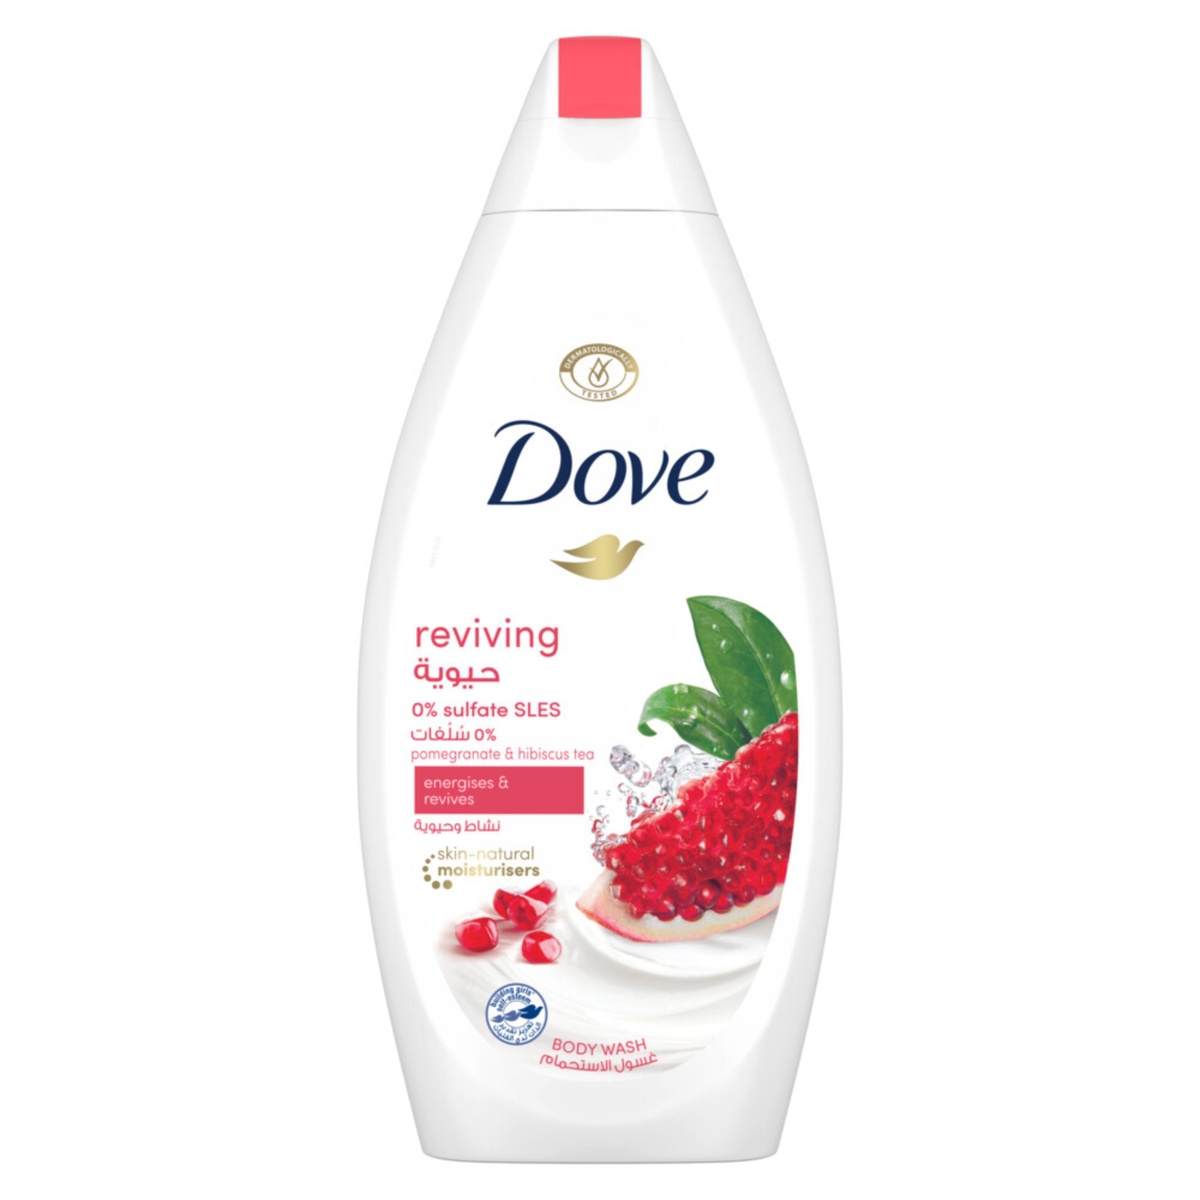 Dove Go Fresh Pomegranate Bodywash 500 ml